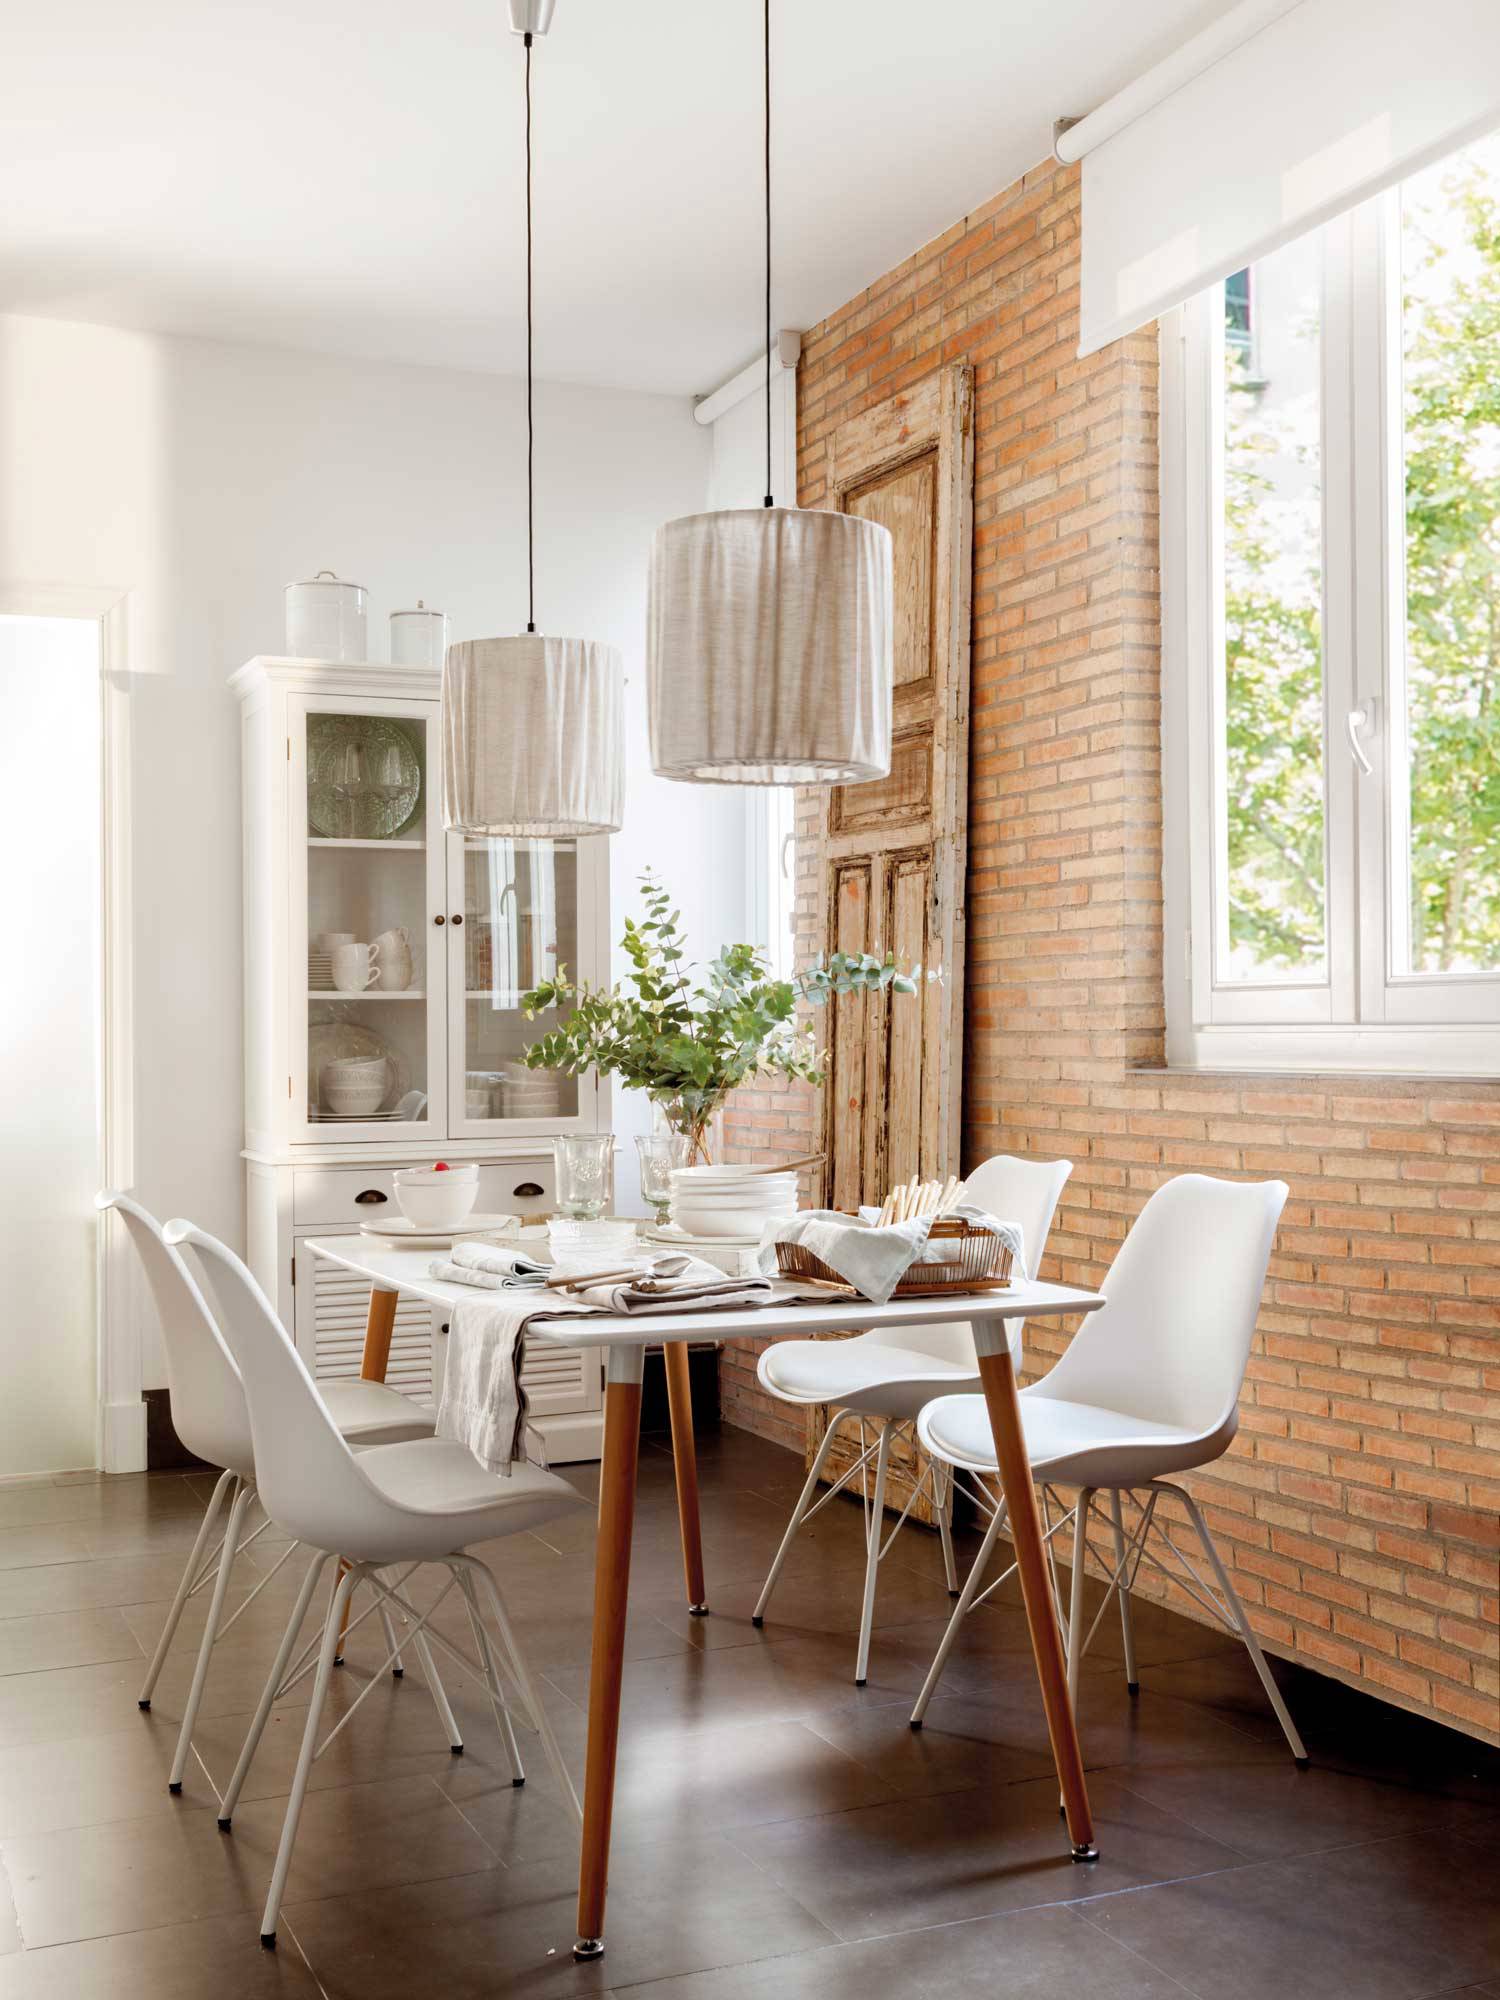 Comedor con pared de ladrillo, vitrina pintada en blanco, mesa y sillas.